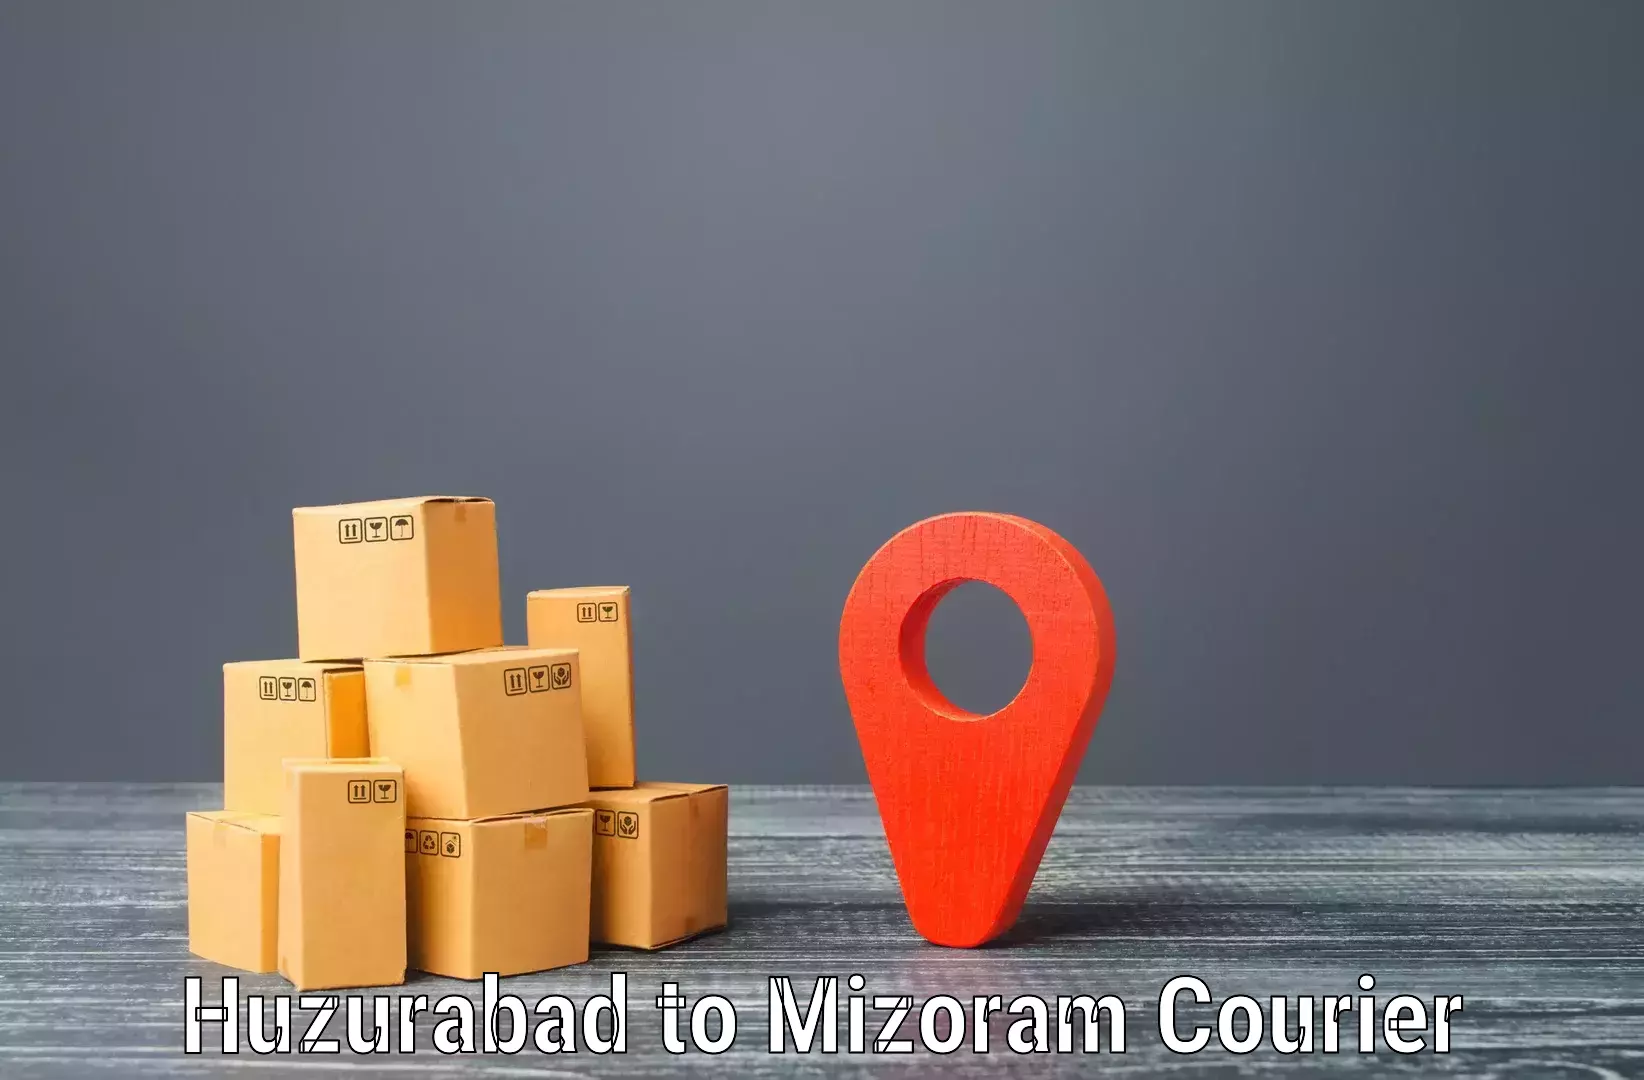 Express shipping Huzurabad to Mizoram University Aizawl